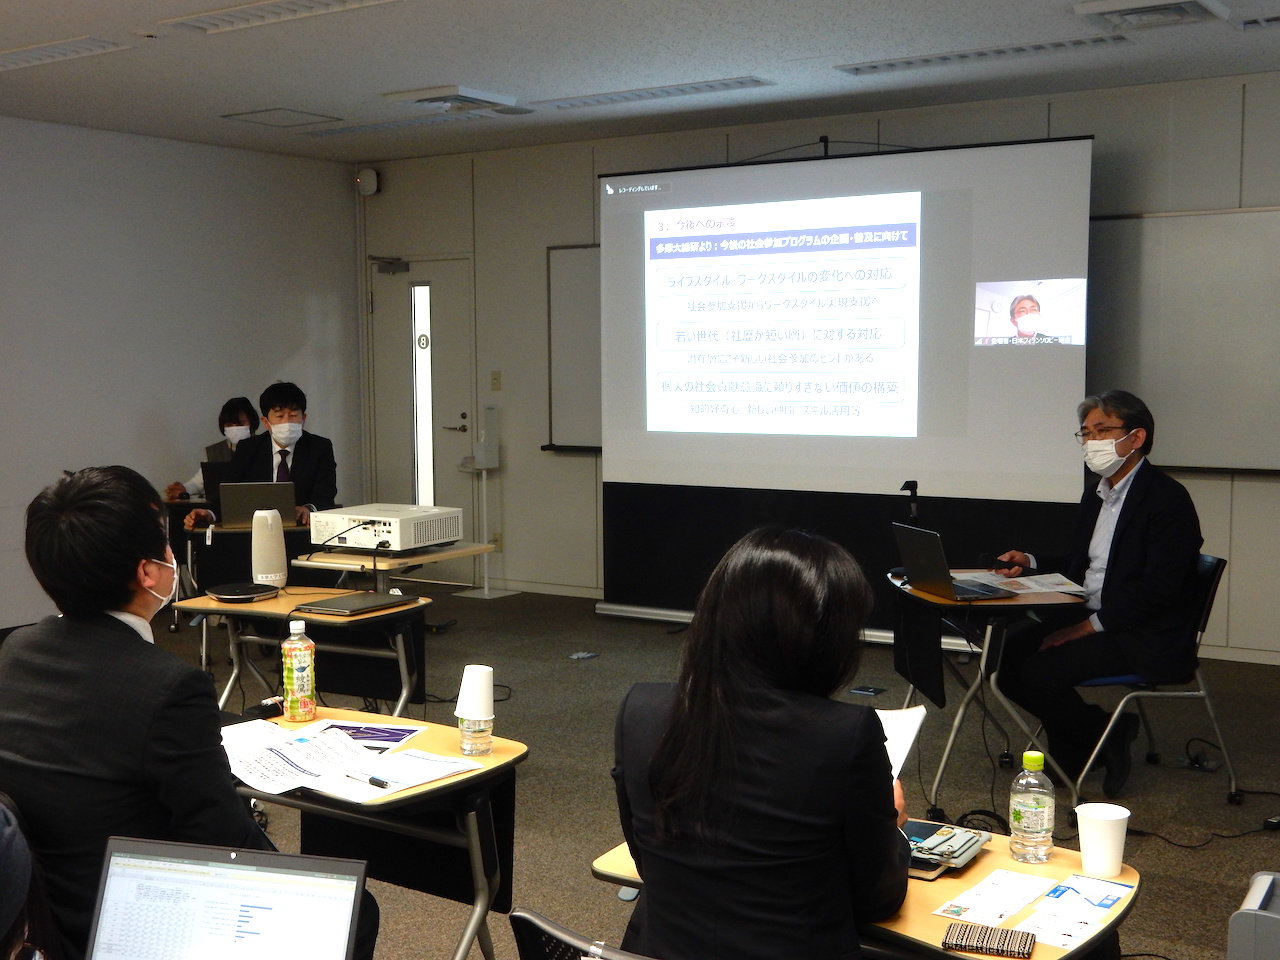 日本フィランソロピー協会定例セミナーにて調査報告